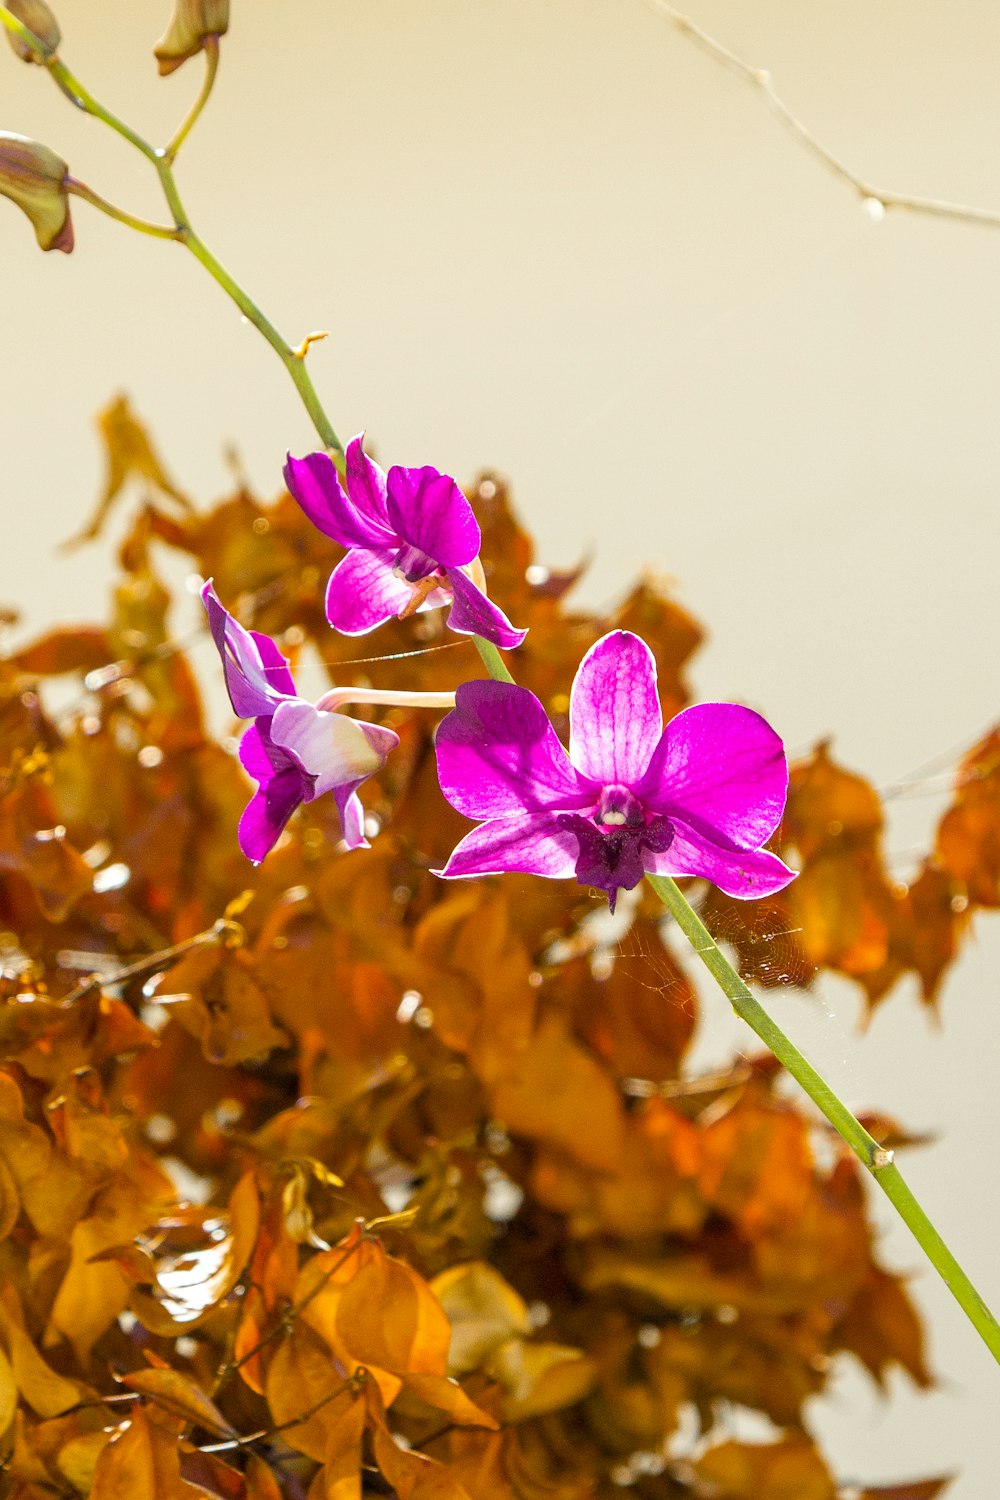 eine lila Blume, die auf einer grünen Pflanze sitzt